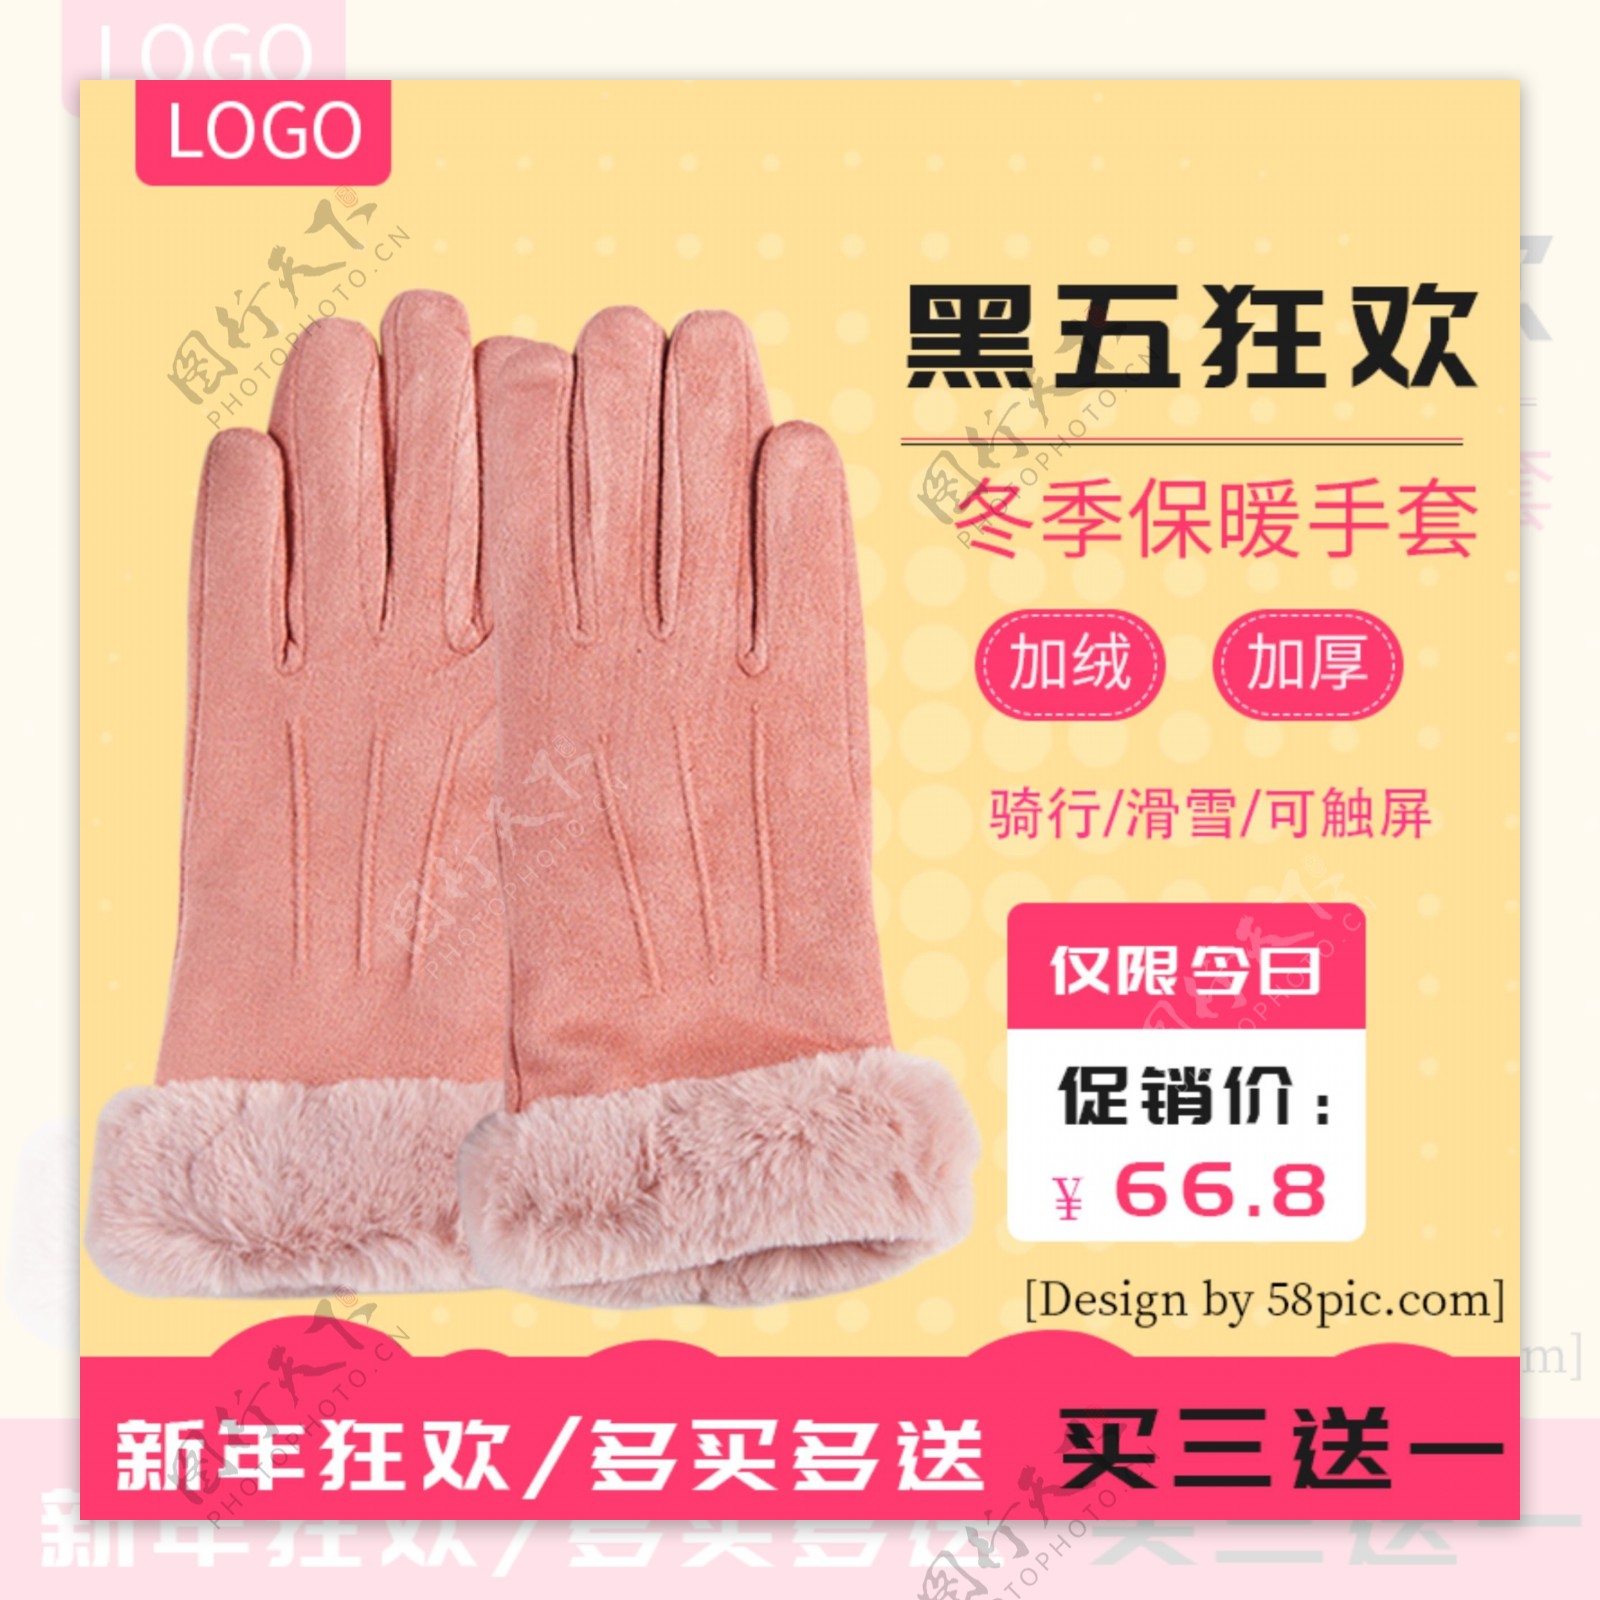 冬季保暖手套主图